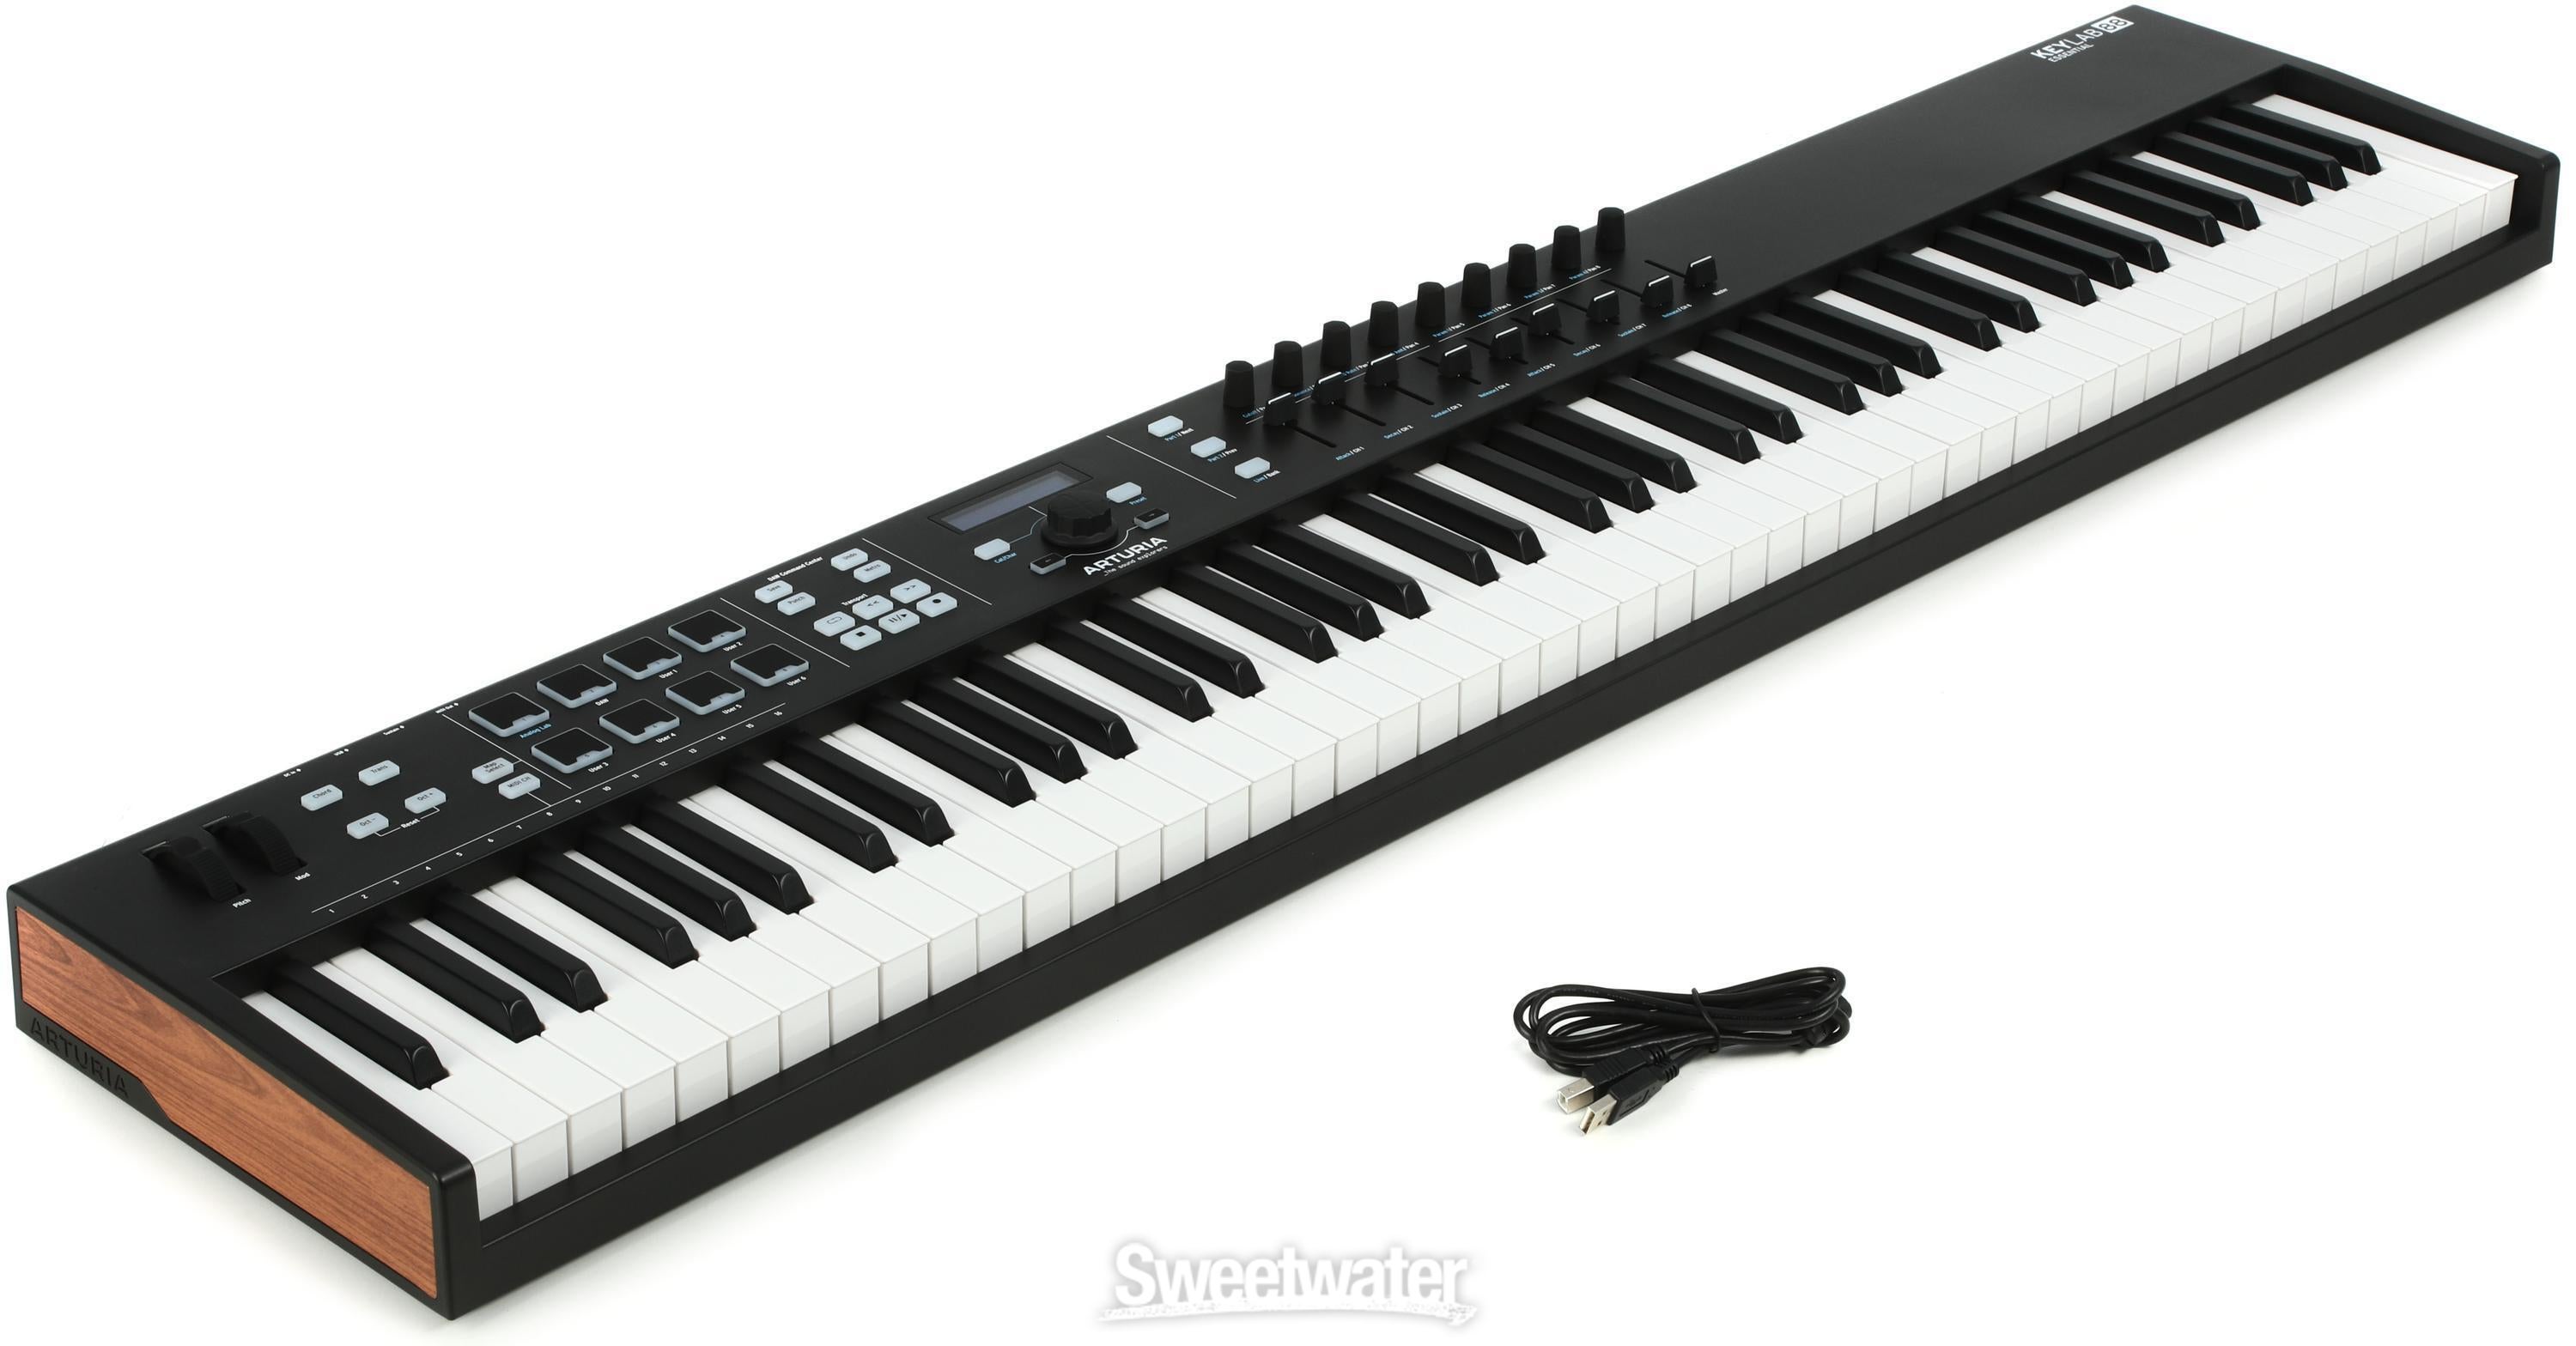 Arturia KeyLab Essential 88 88-key Keyboard Controller - Black